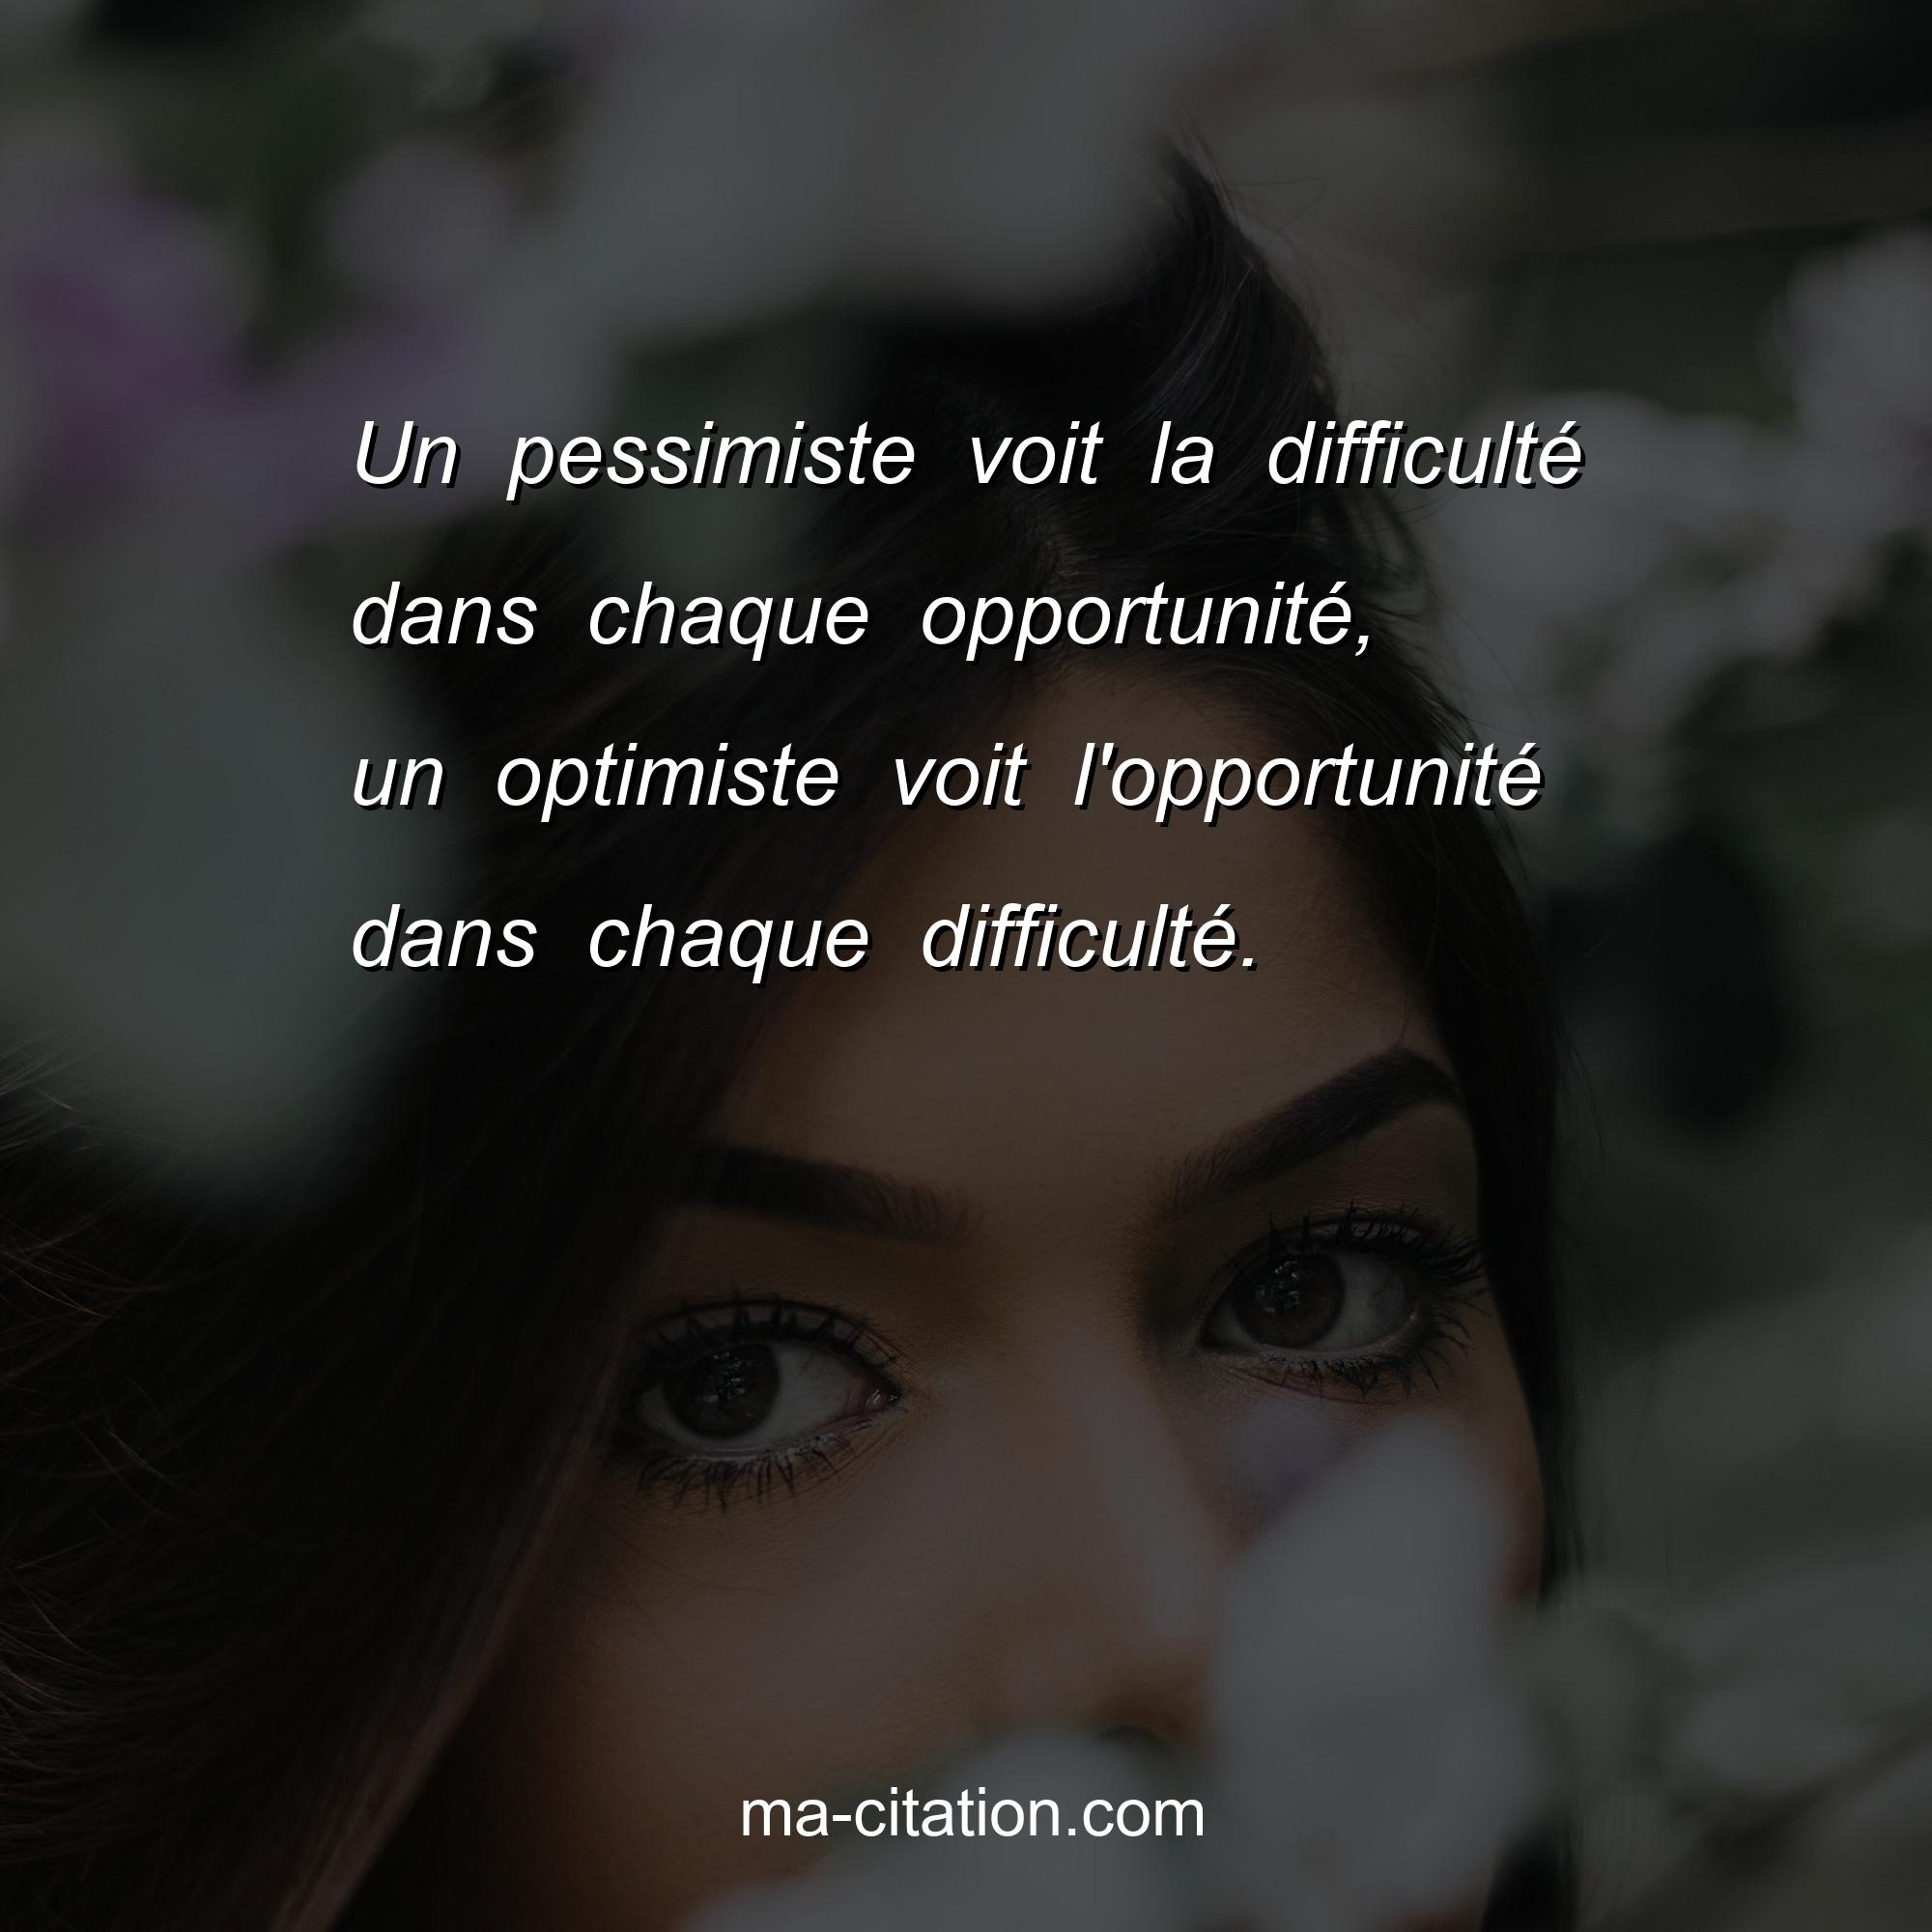 Ma-Citation.com : Un pessimiste voit la difficulté dans chaque opportunité, un optimiste voit l'opportunité dans chaque difficulté.